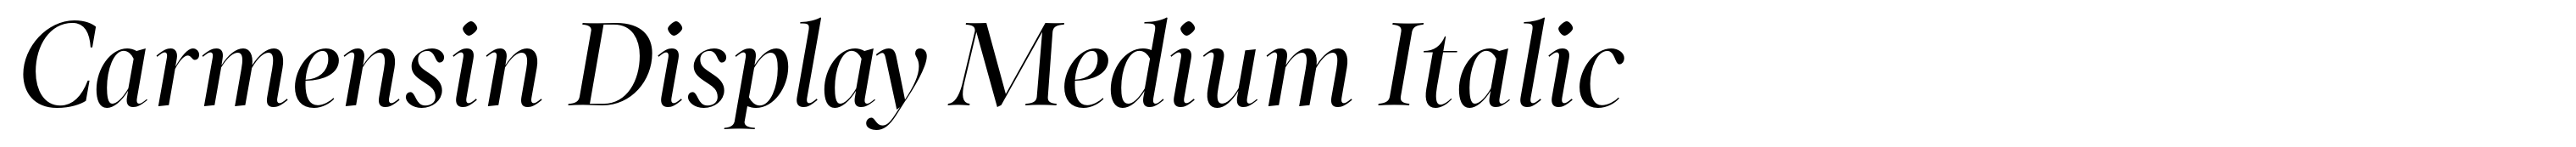 Carmensin Display Medium Italic